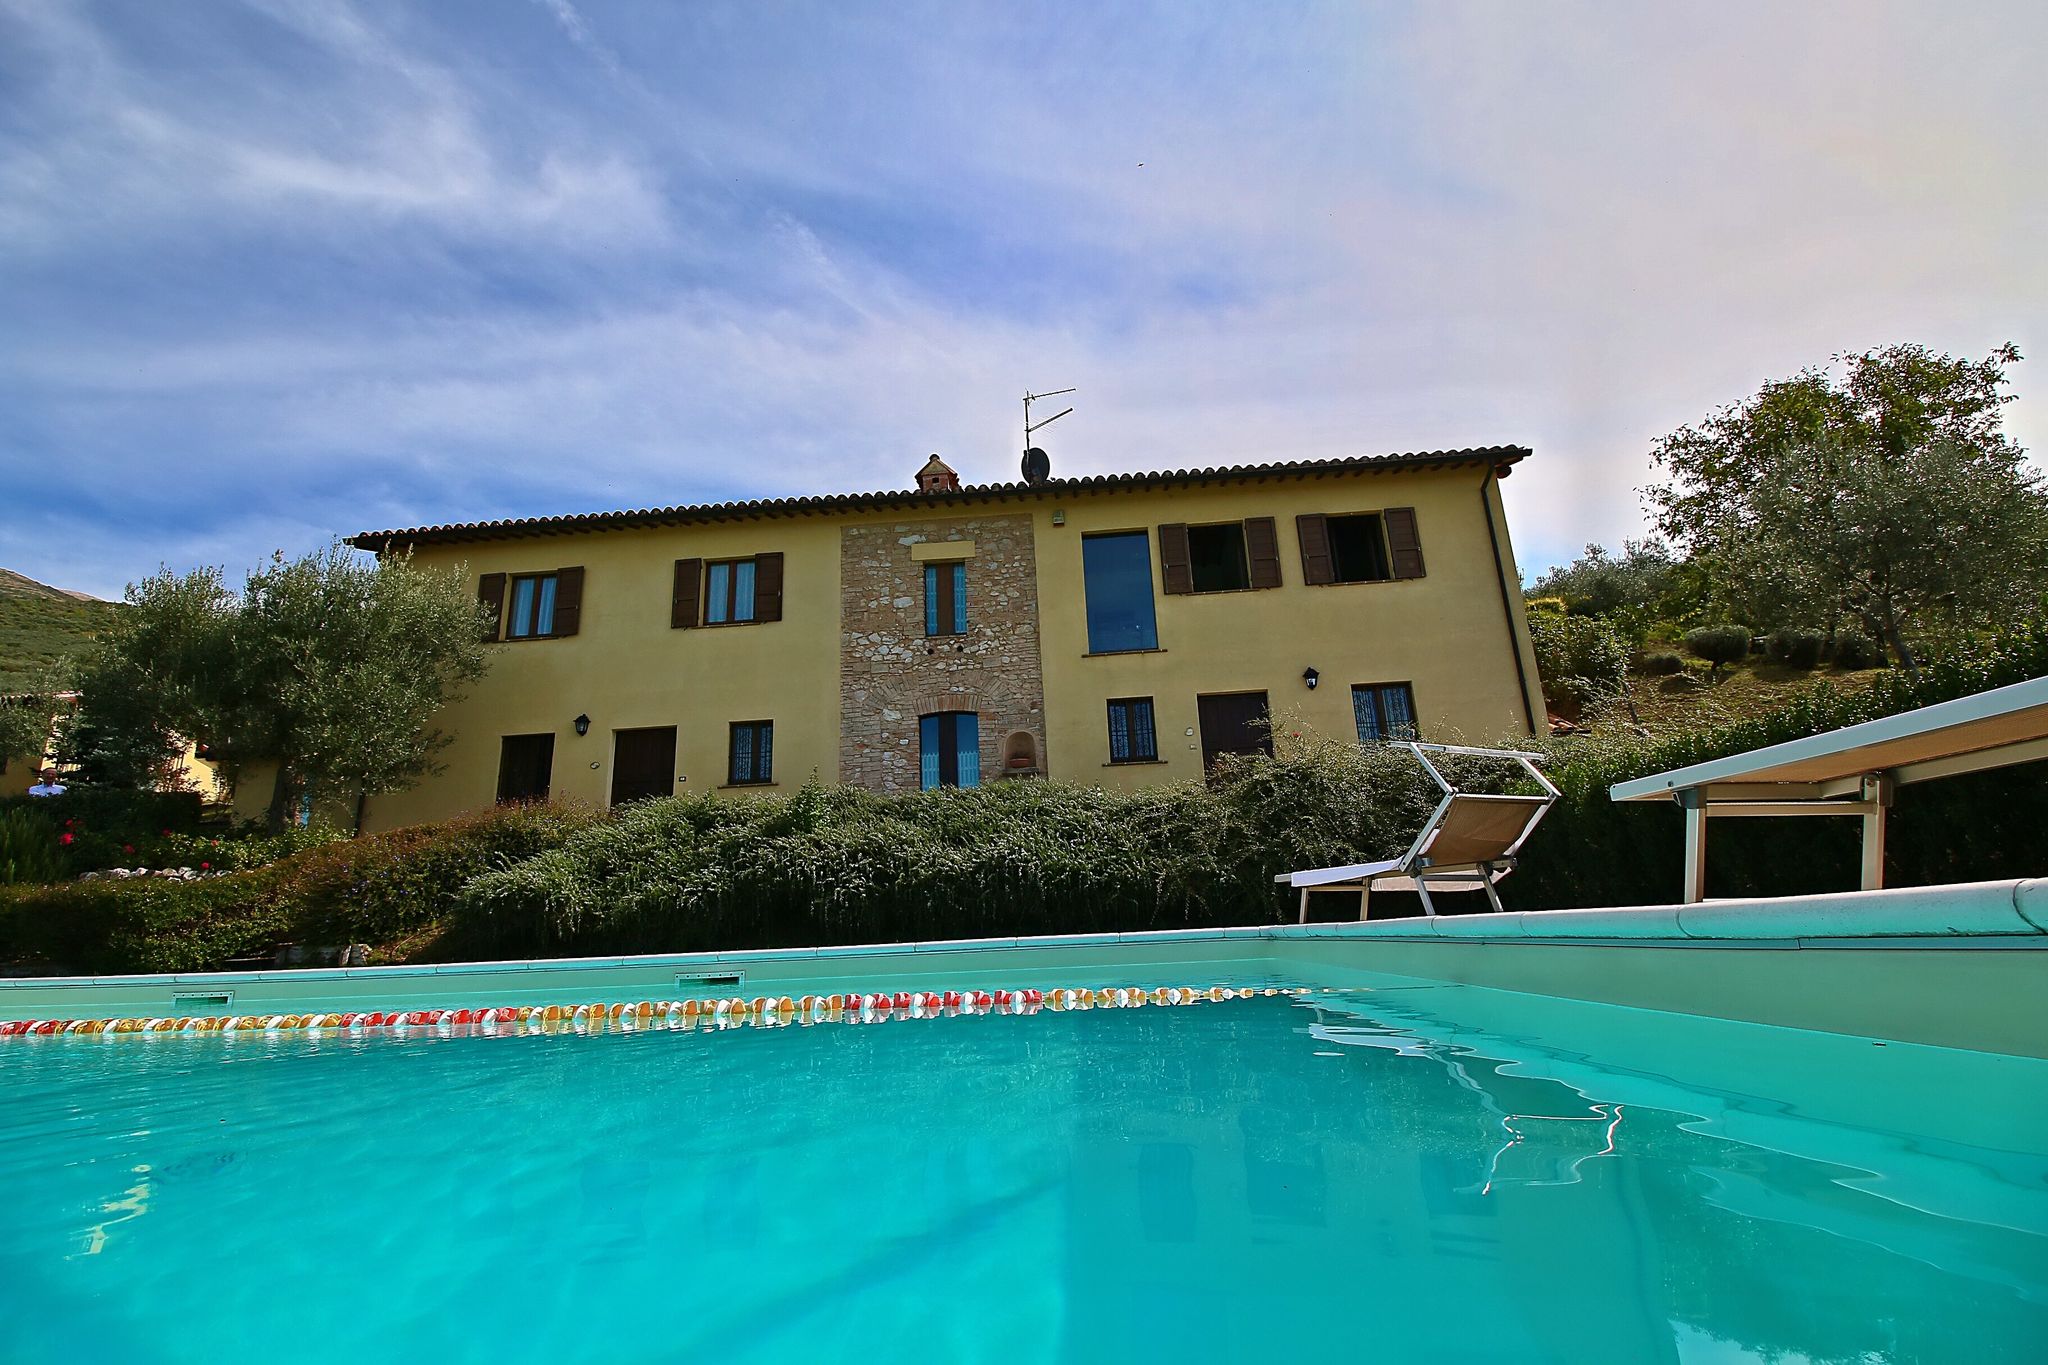 Maison de campagne confortable avec piscine à Trevi